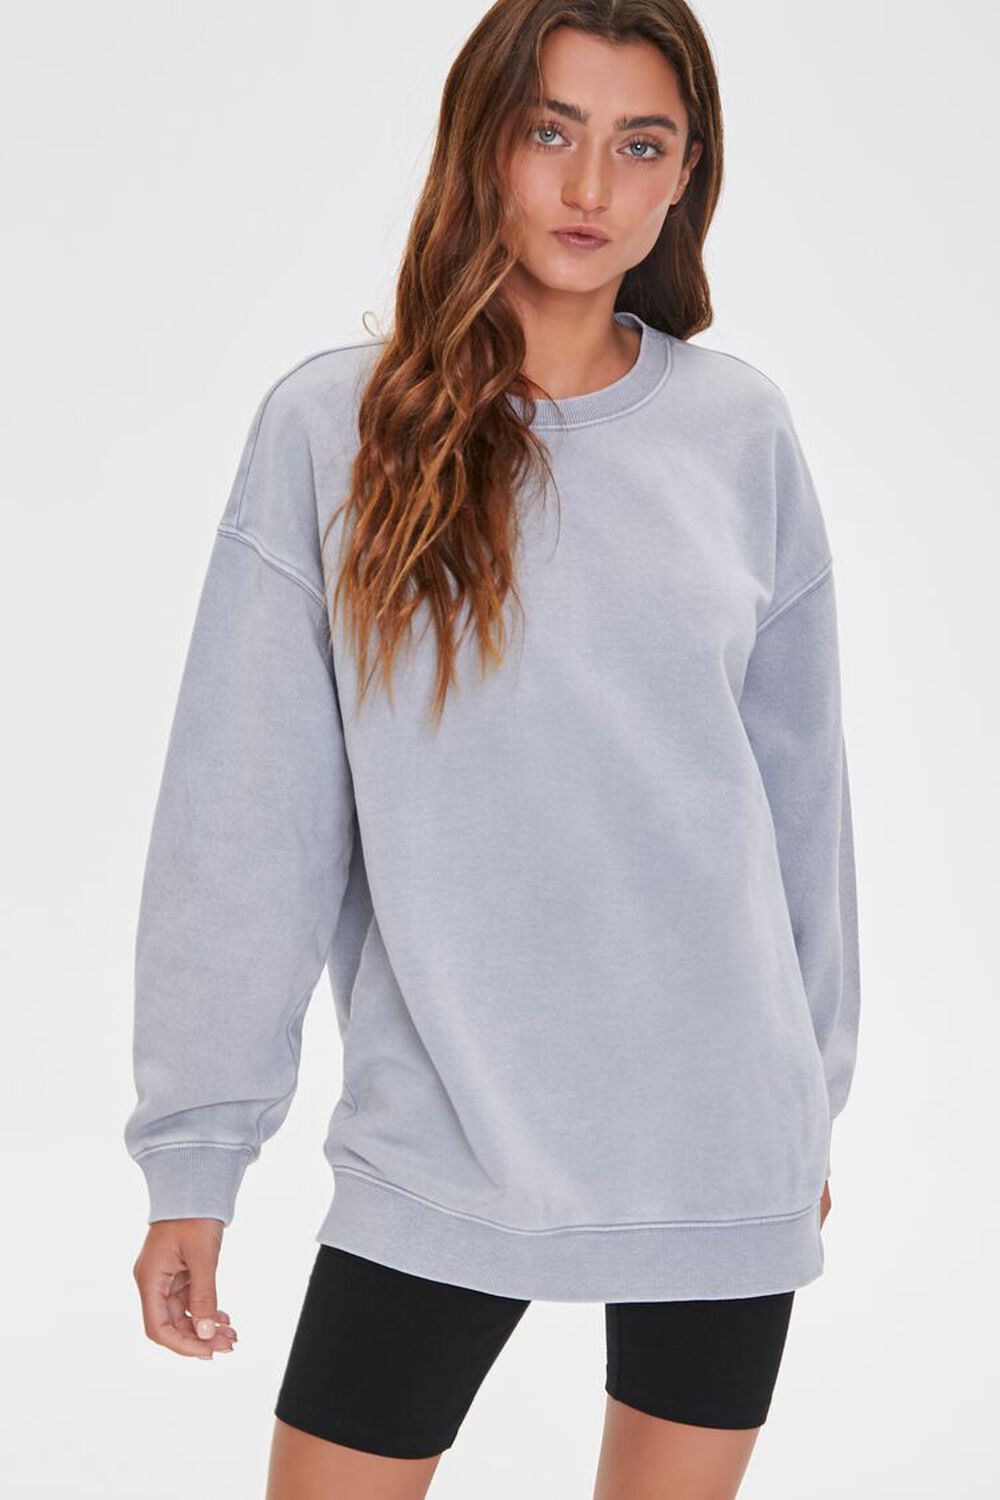 GREY Oversized Fleece Sweatshirt, image 1